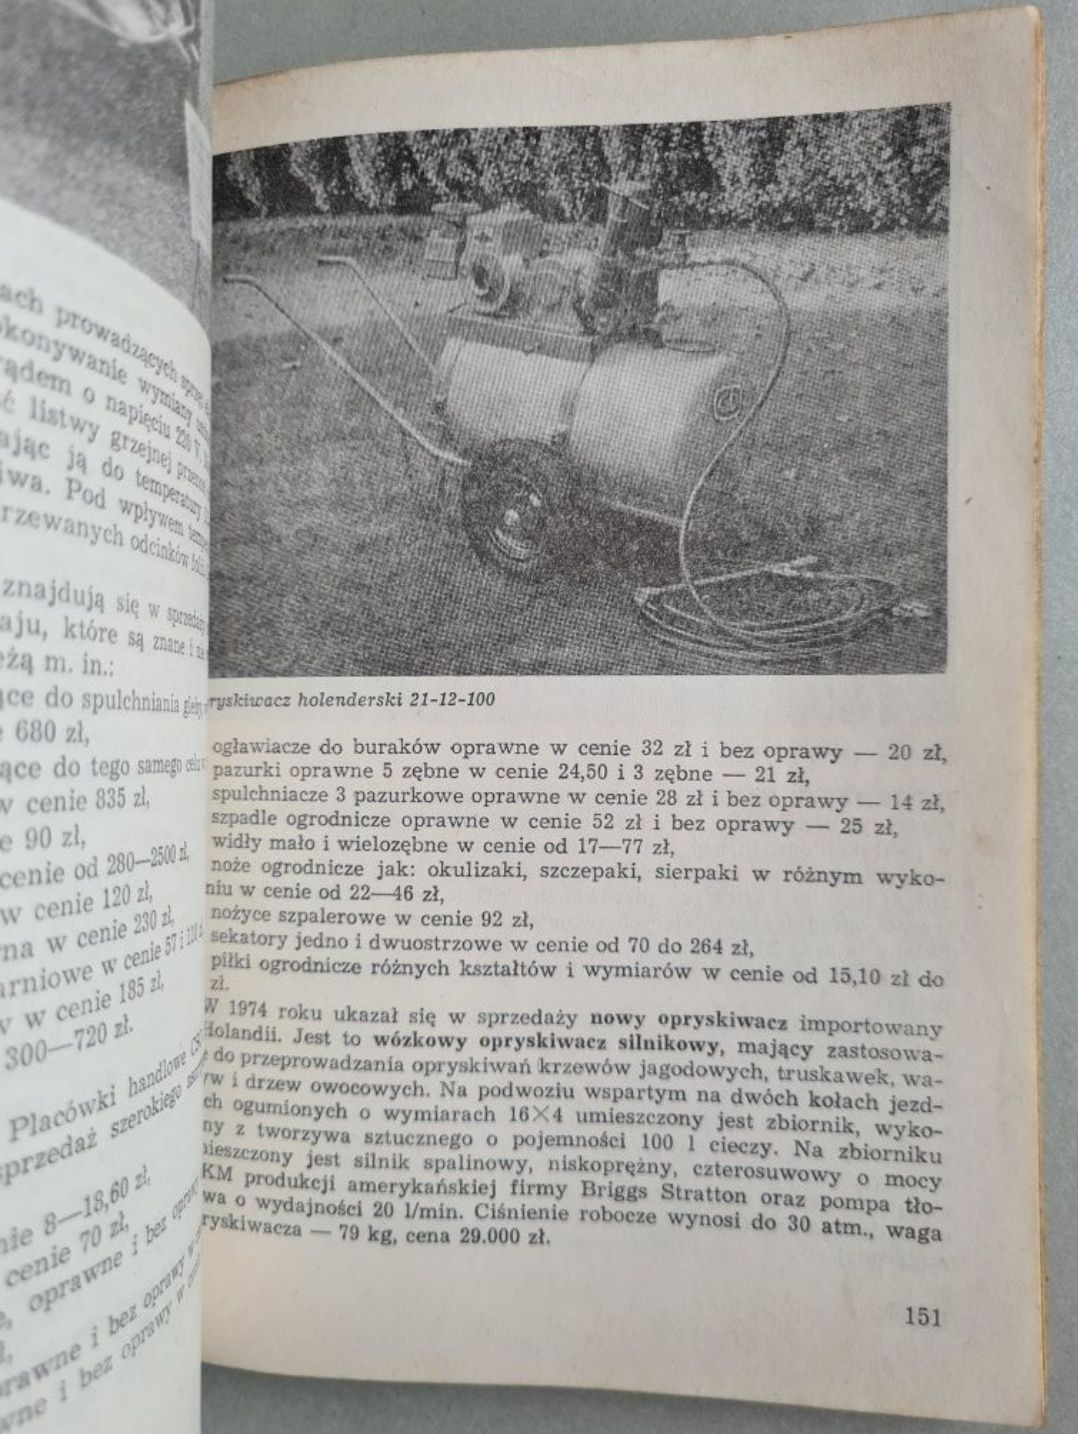 Kalendarz hasła ogrodniczego 1975. Książka